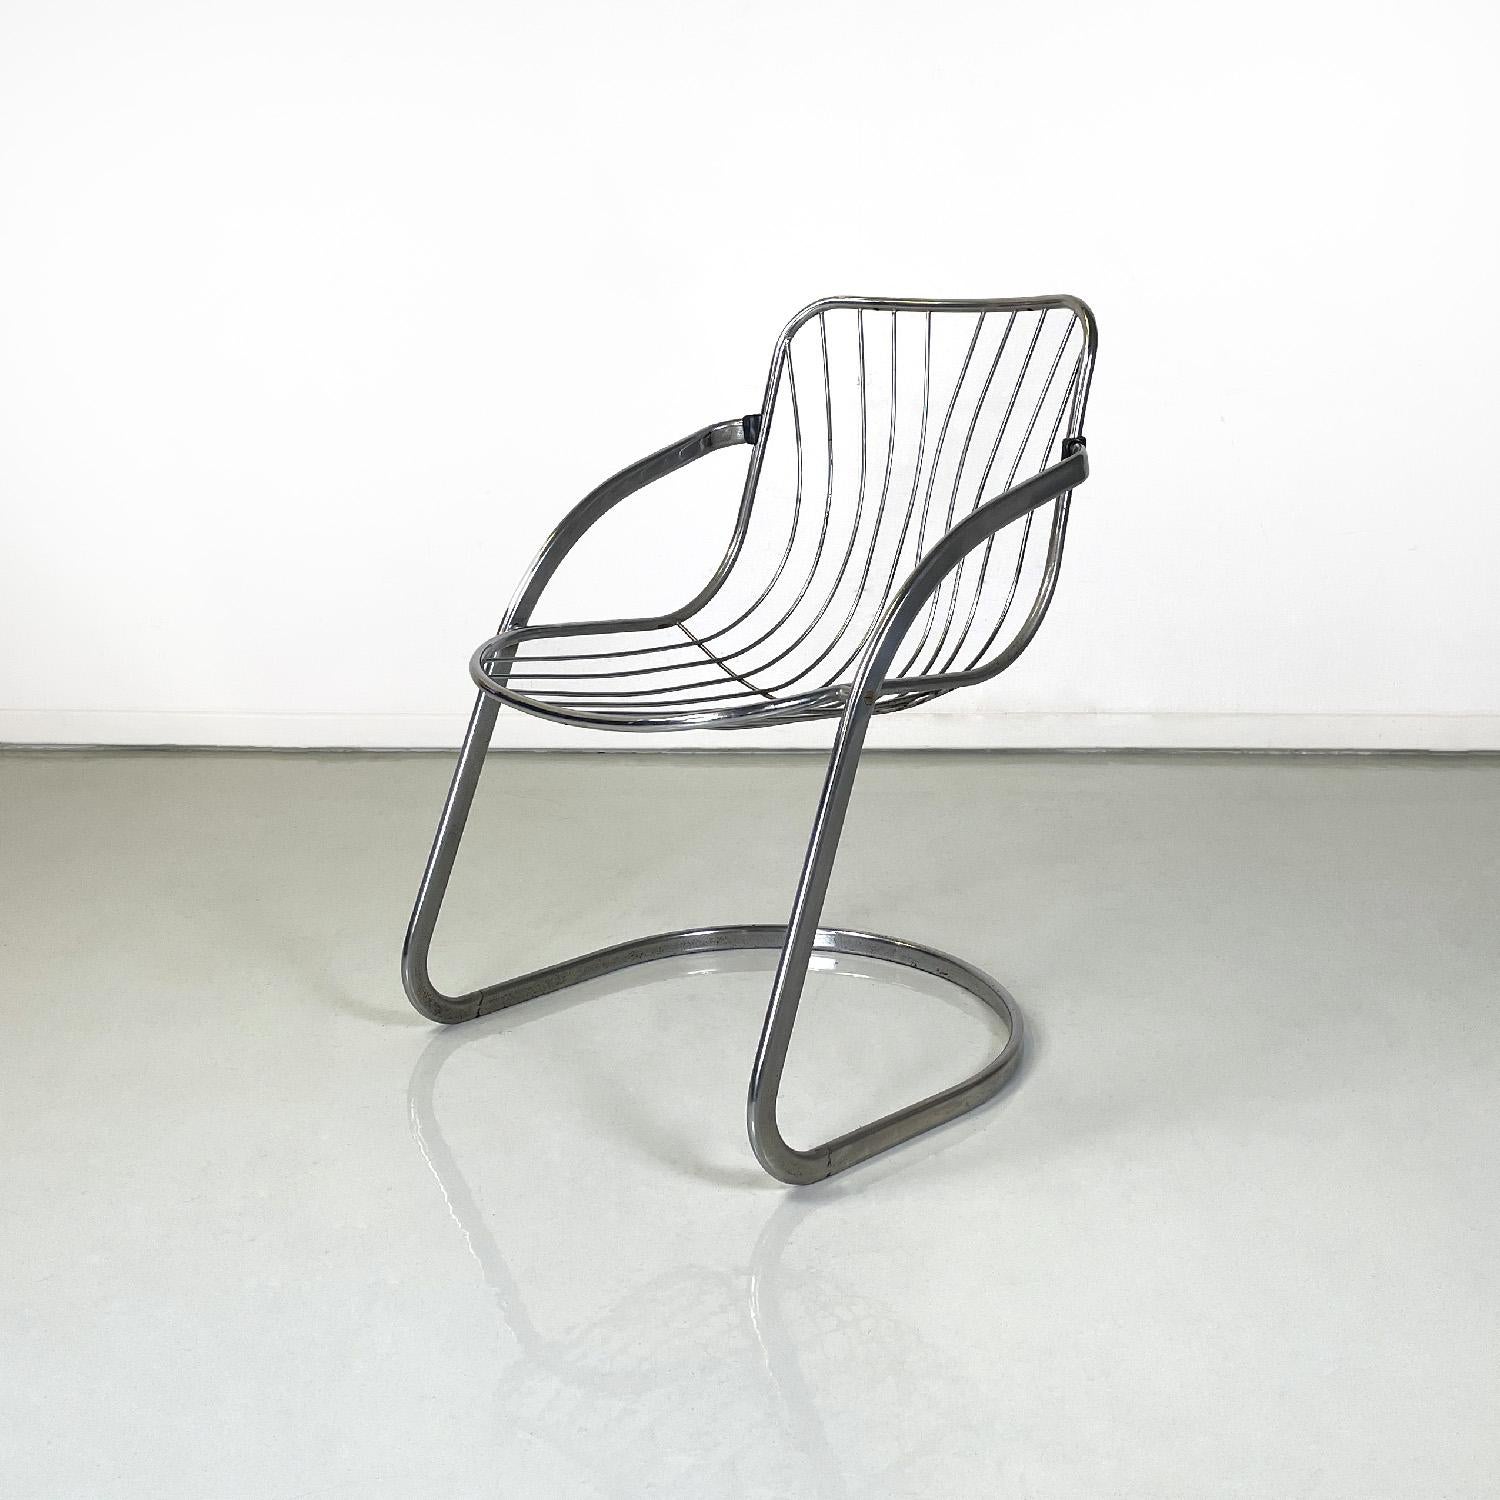 Moderner italienischer Stuhl aus gebogenem, verchromtem Stahlrohr, 1970er Jahre
Gebogener Stuhl aus verchromtem Stahl. Sitz und Rückenlehne sind aus feinem verchromtem Stahlrohr gefertigt, das sich der Form des Körpers anpasst. Die Armlehnen sind